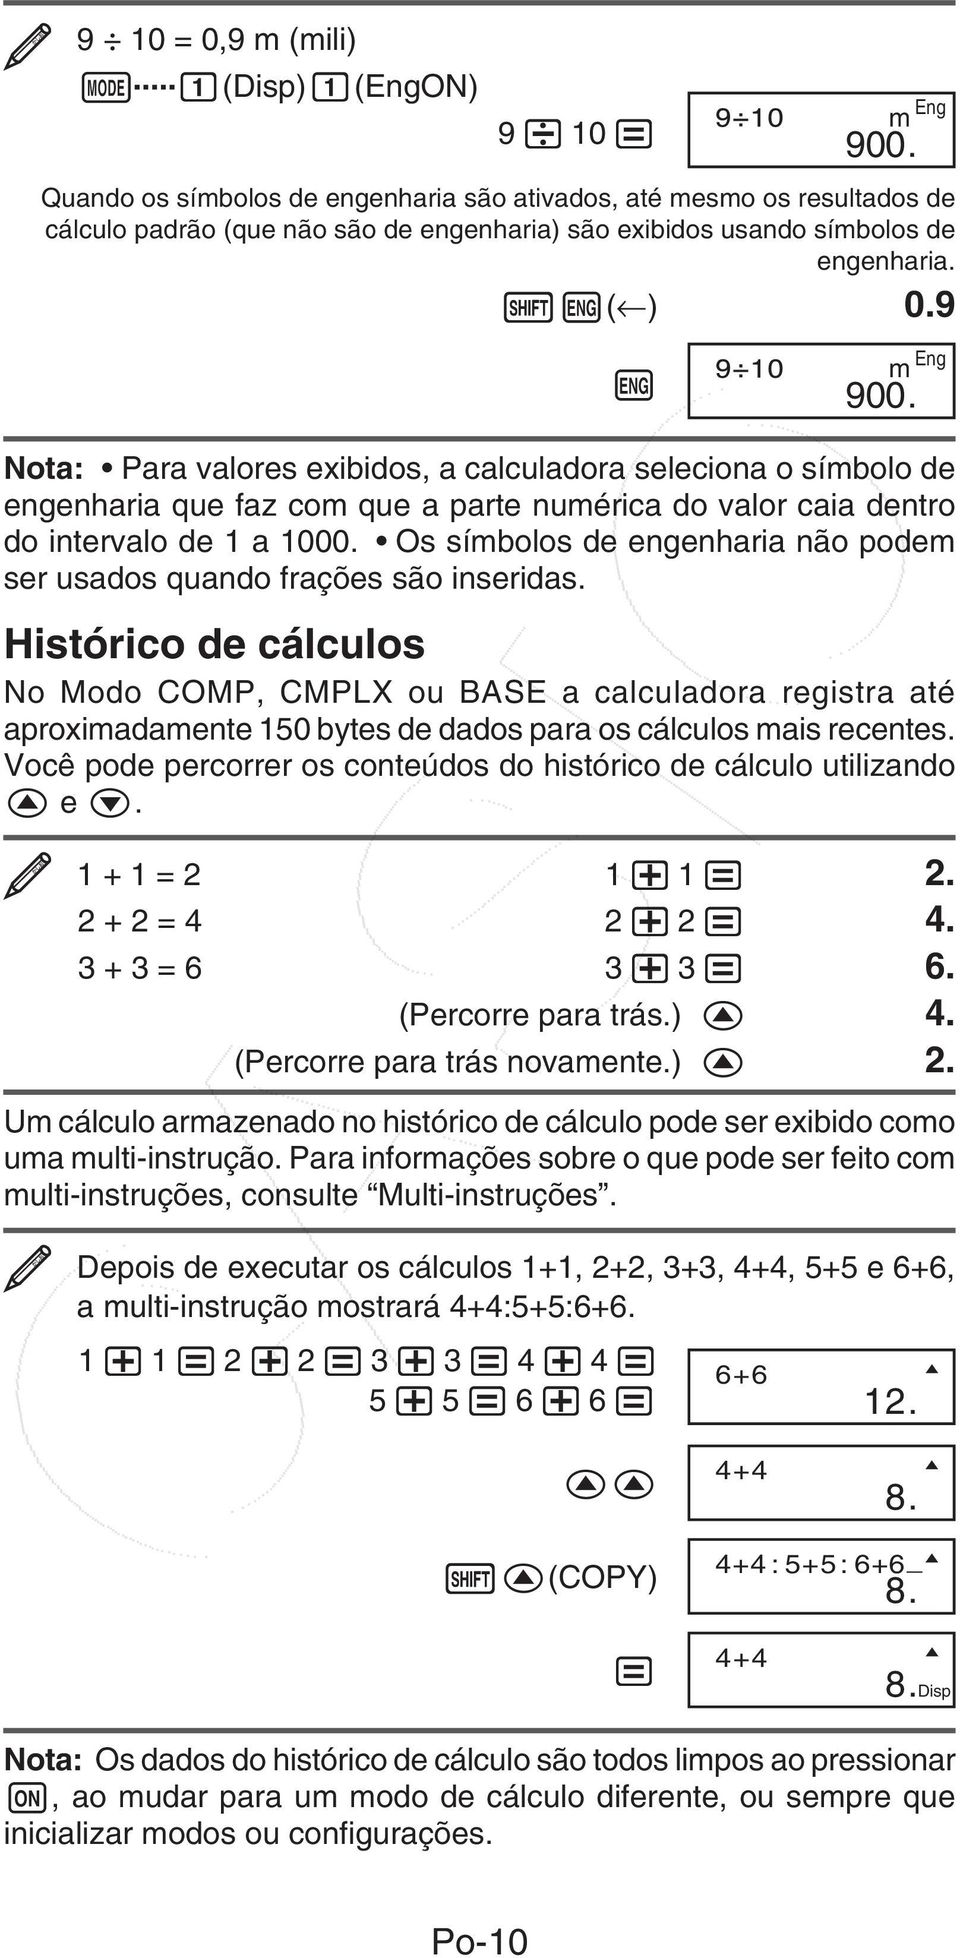 Nota: Para valores exibidos, a calculadora seleciona o símbolo de engenharia que faz com que a parte numérica do valor caia dentro do intervalo de 1 a 1000.